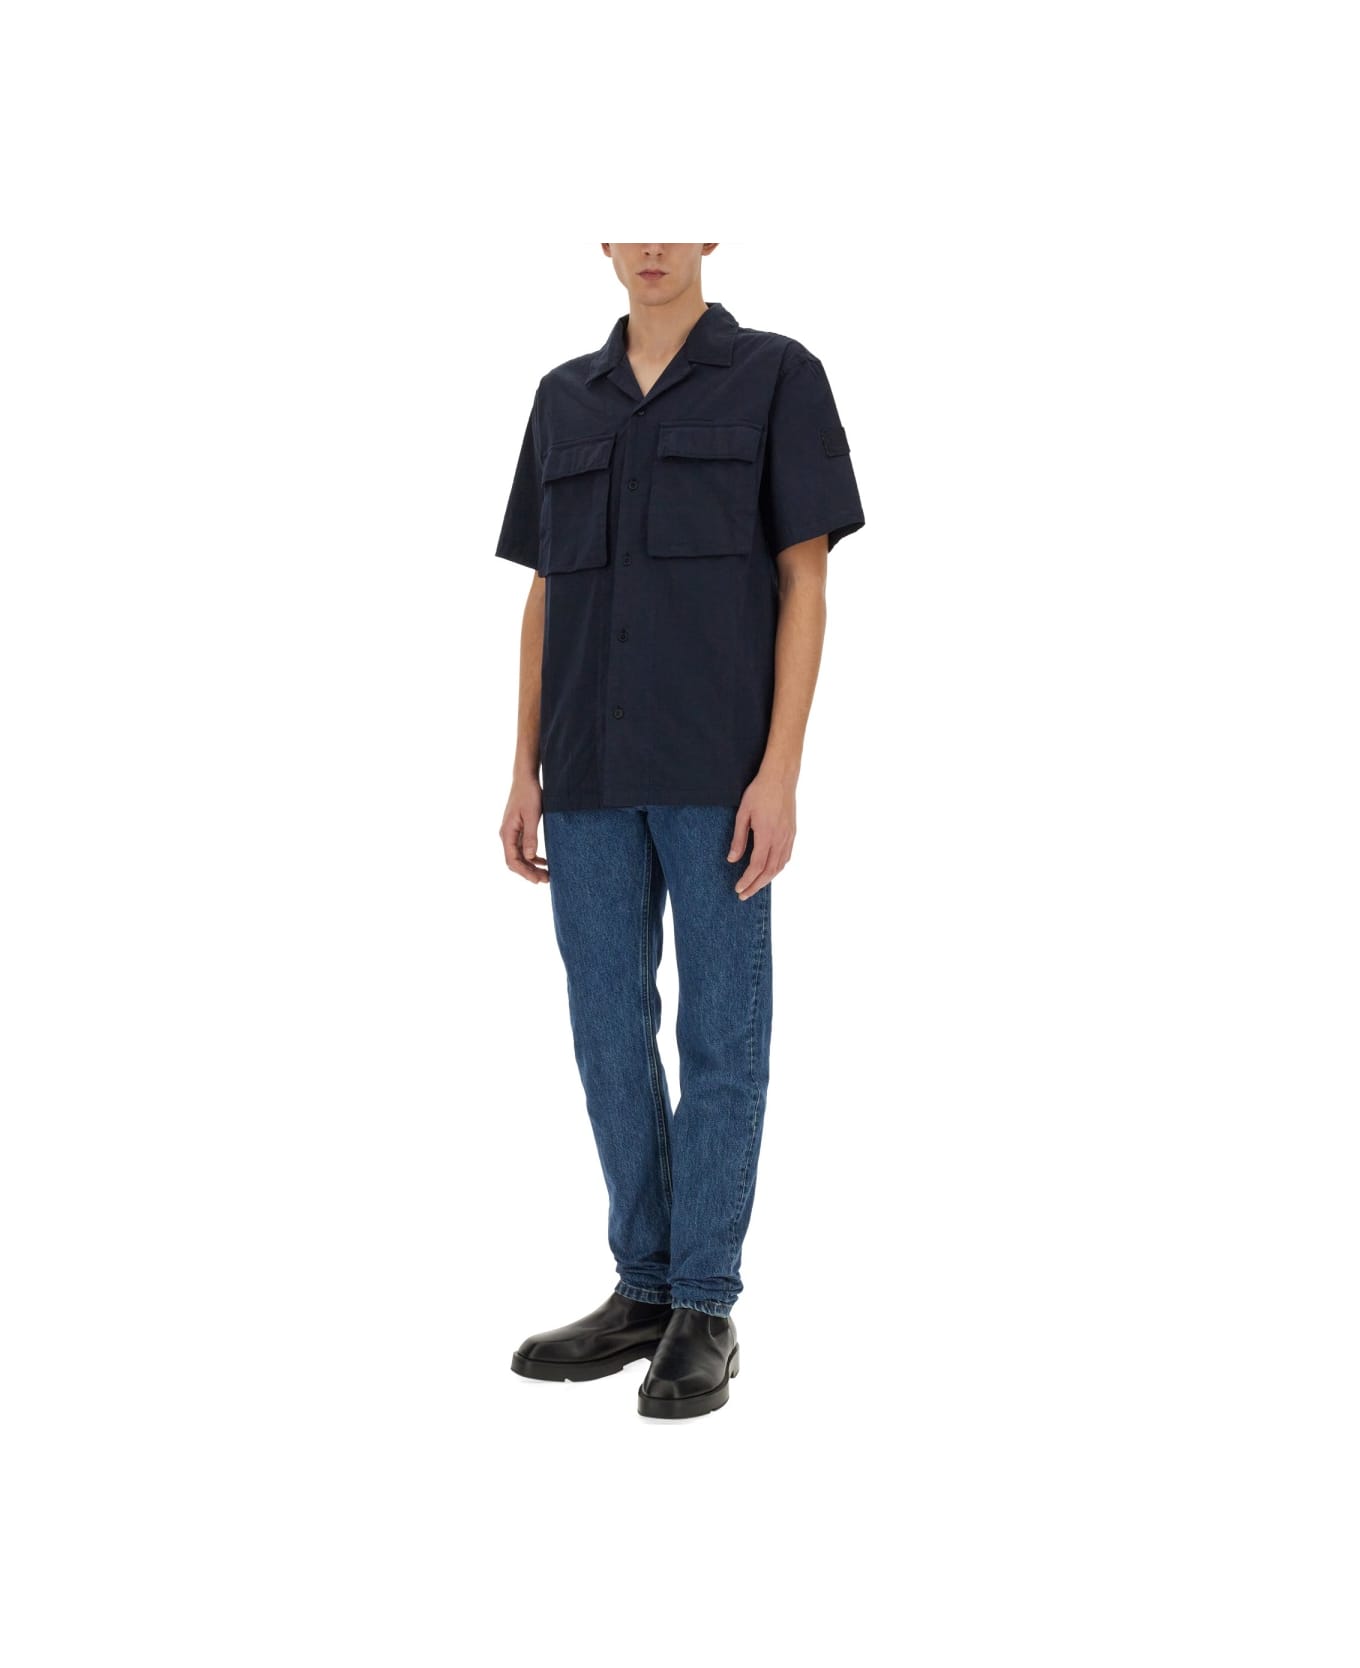 Belstaff Shirt With Pockets - BLUE シャツ